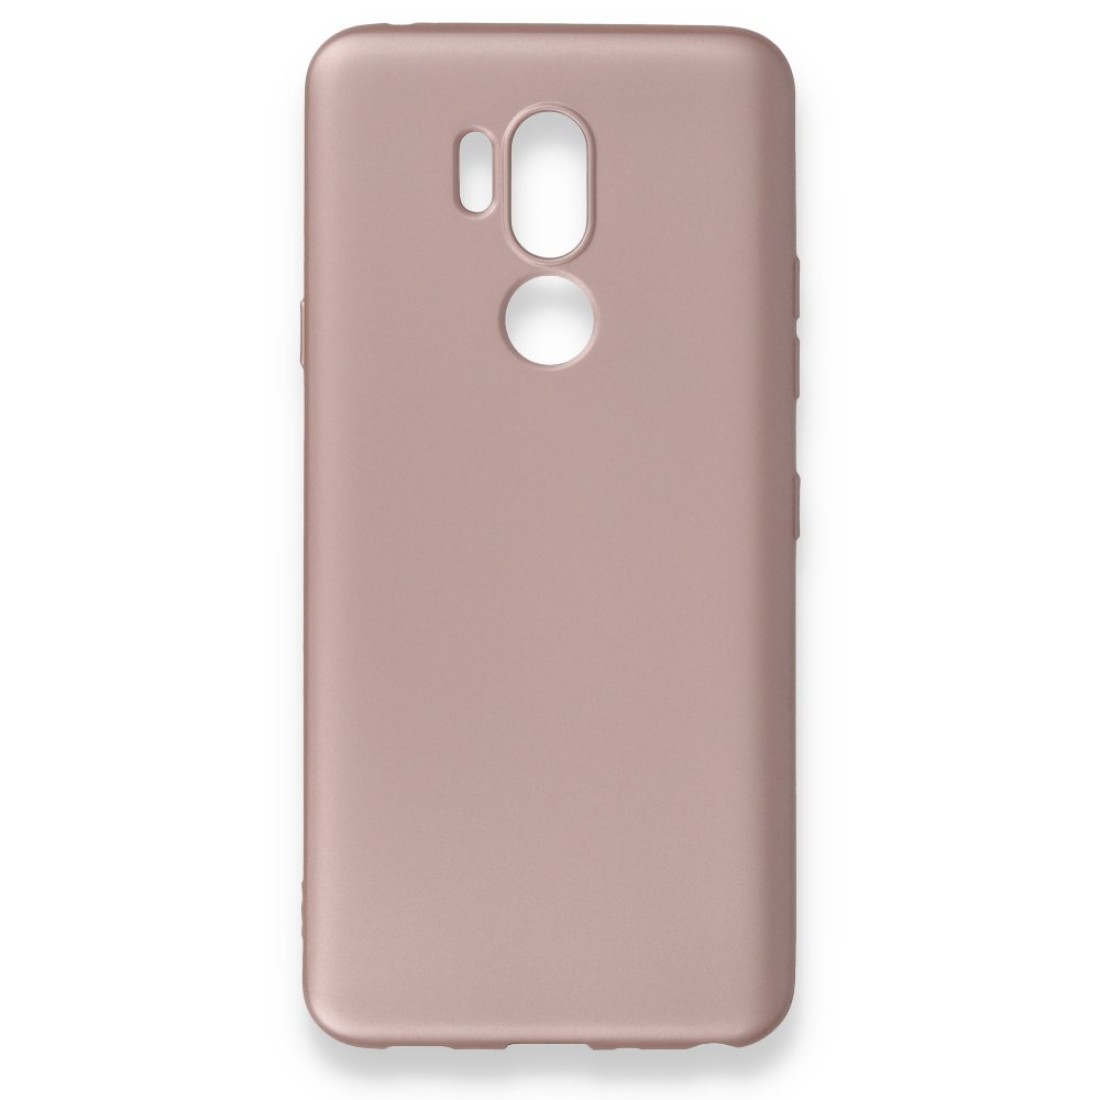 LG G7 ThinQ Kılıf Premium Rubber Silikon - Rose Gold